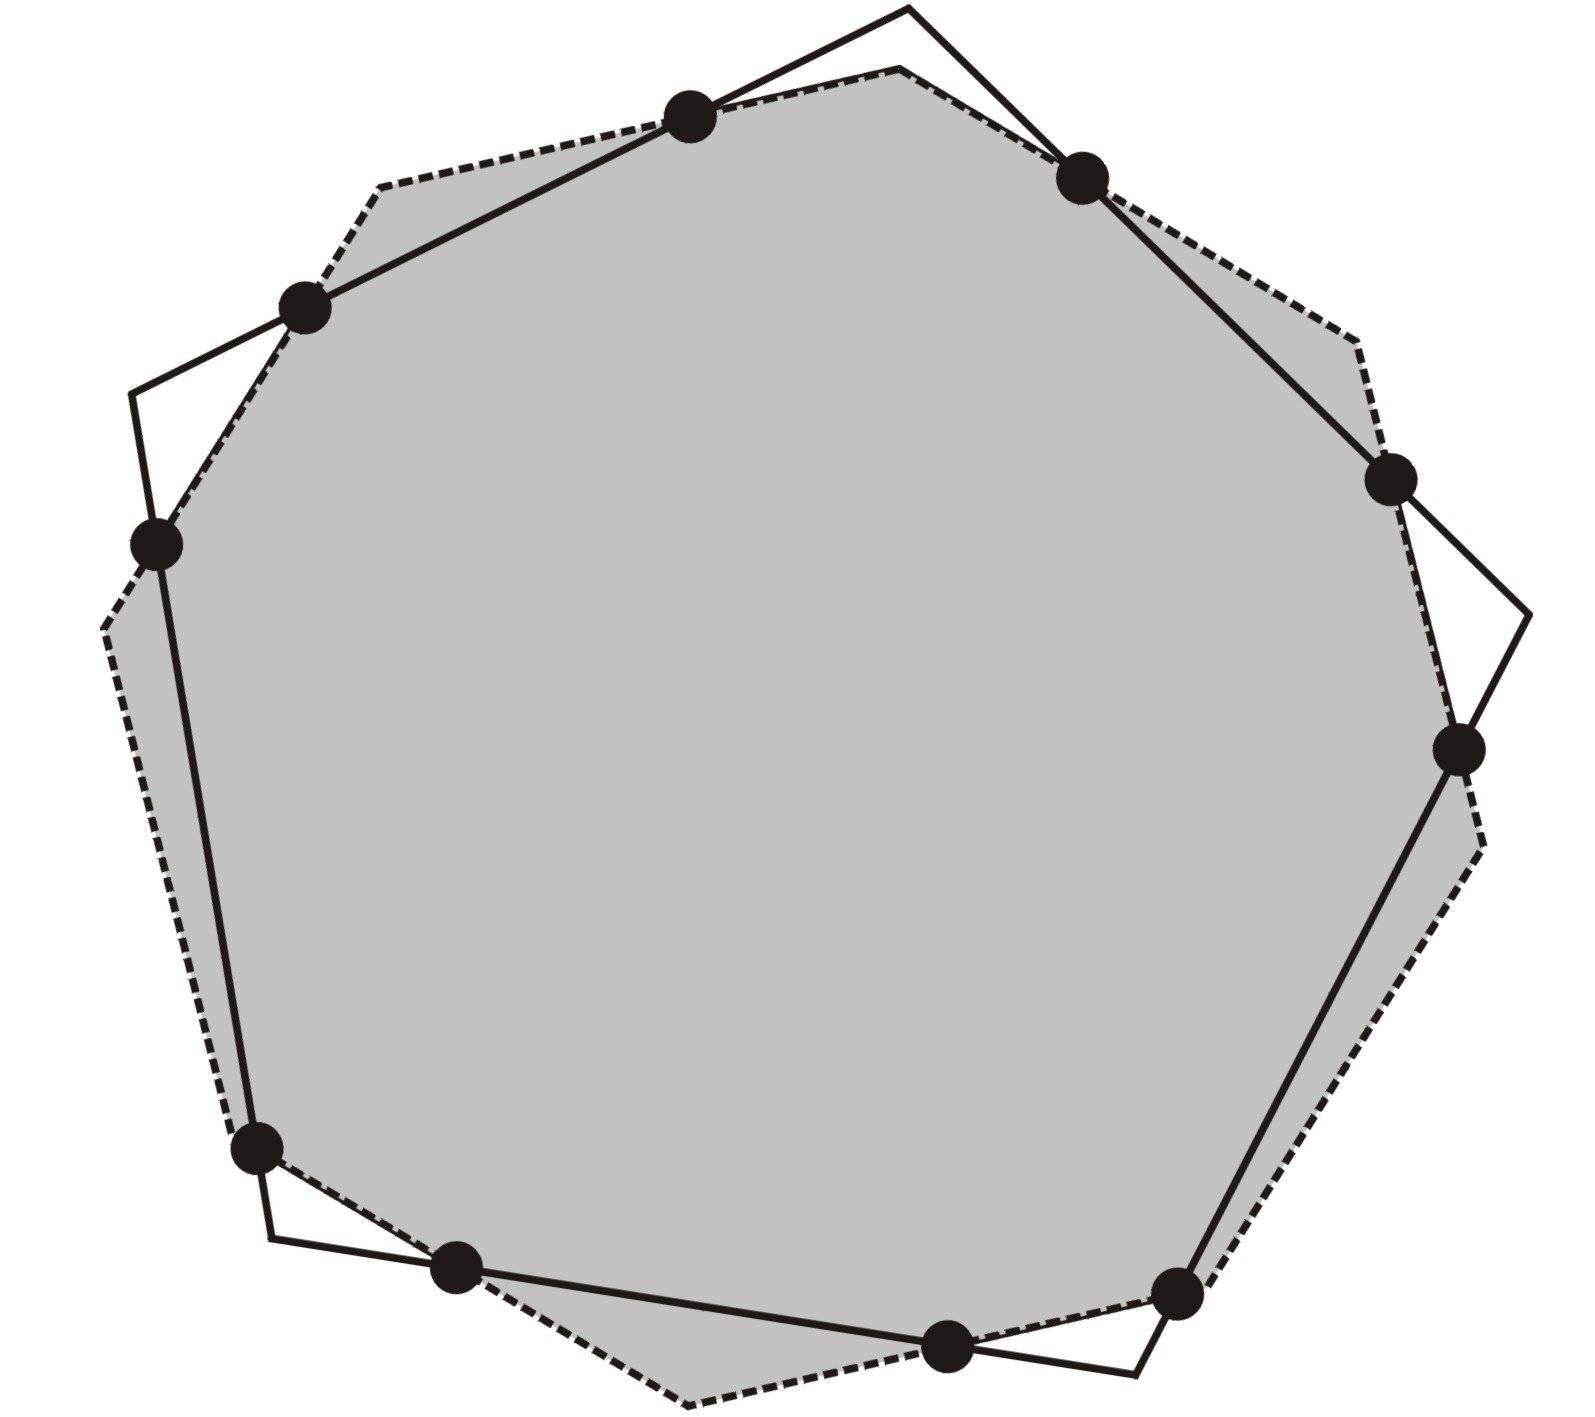 27) Bir üçgenin her kenarı üzerinde, köşelerden farklı n nokta alınmakta ve bu noktaların her birisinden karşı köşeye bir doğru çizilmektedir.